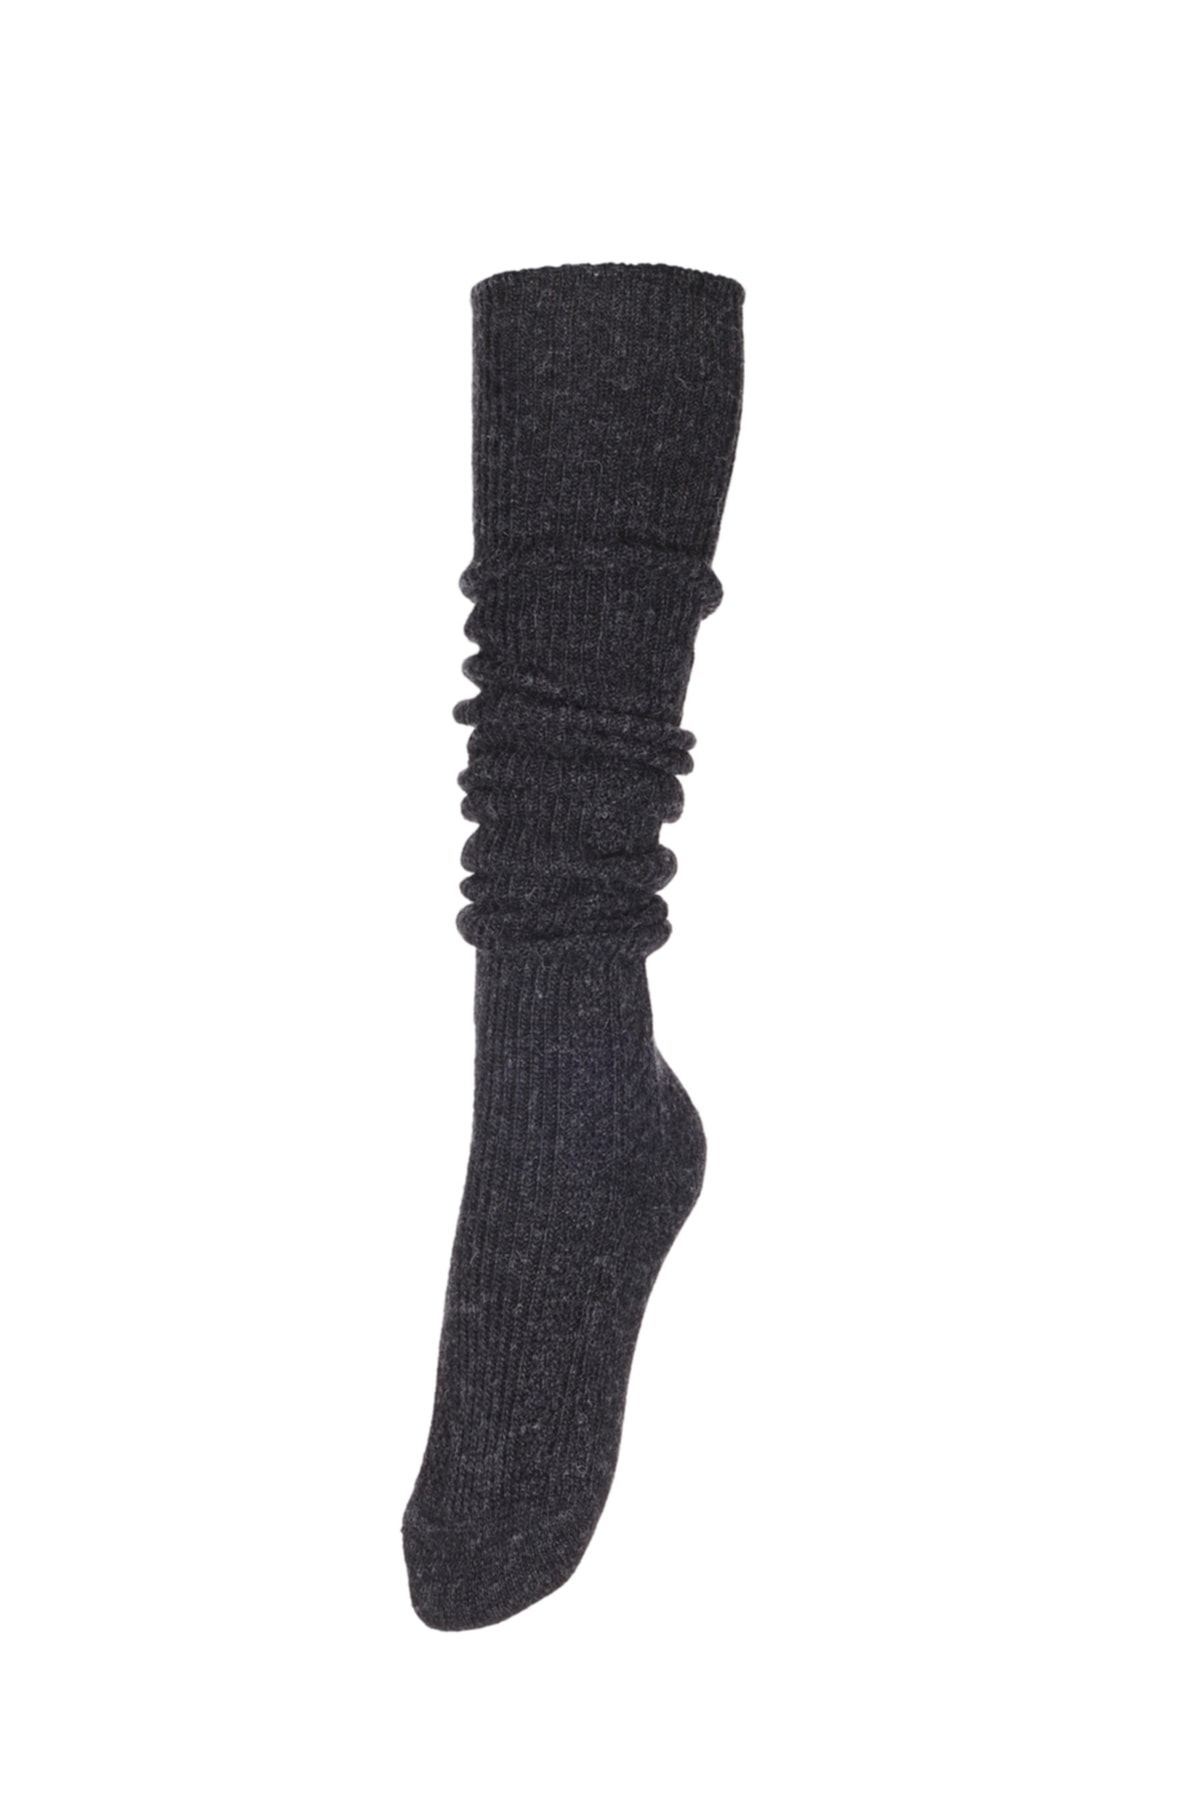 Fonem Kadın Diz Üstü Yünlü Çorap Fo 8015 Antrasit